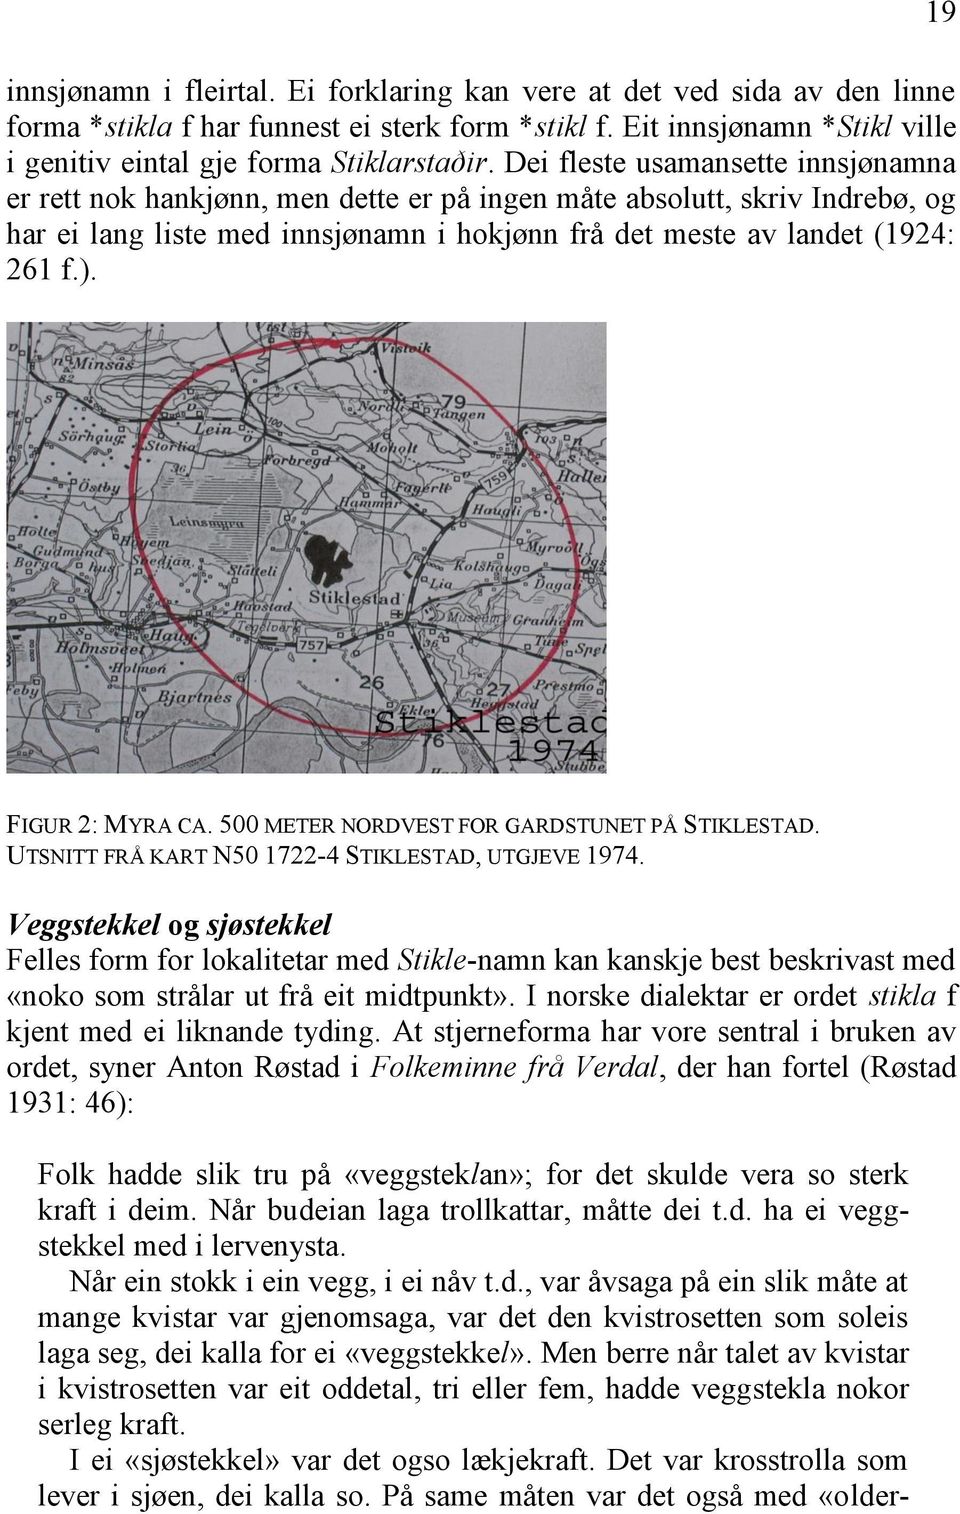 19 FIGUR 2: MYRA CA. 500 METER NORDVEST FOR GARDSTUNET PÅ STIKLESTAD. UTSNITT FRÅ KART N50 1722-4 STIKLESTAD, UTGJEVE 1974.